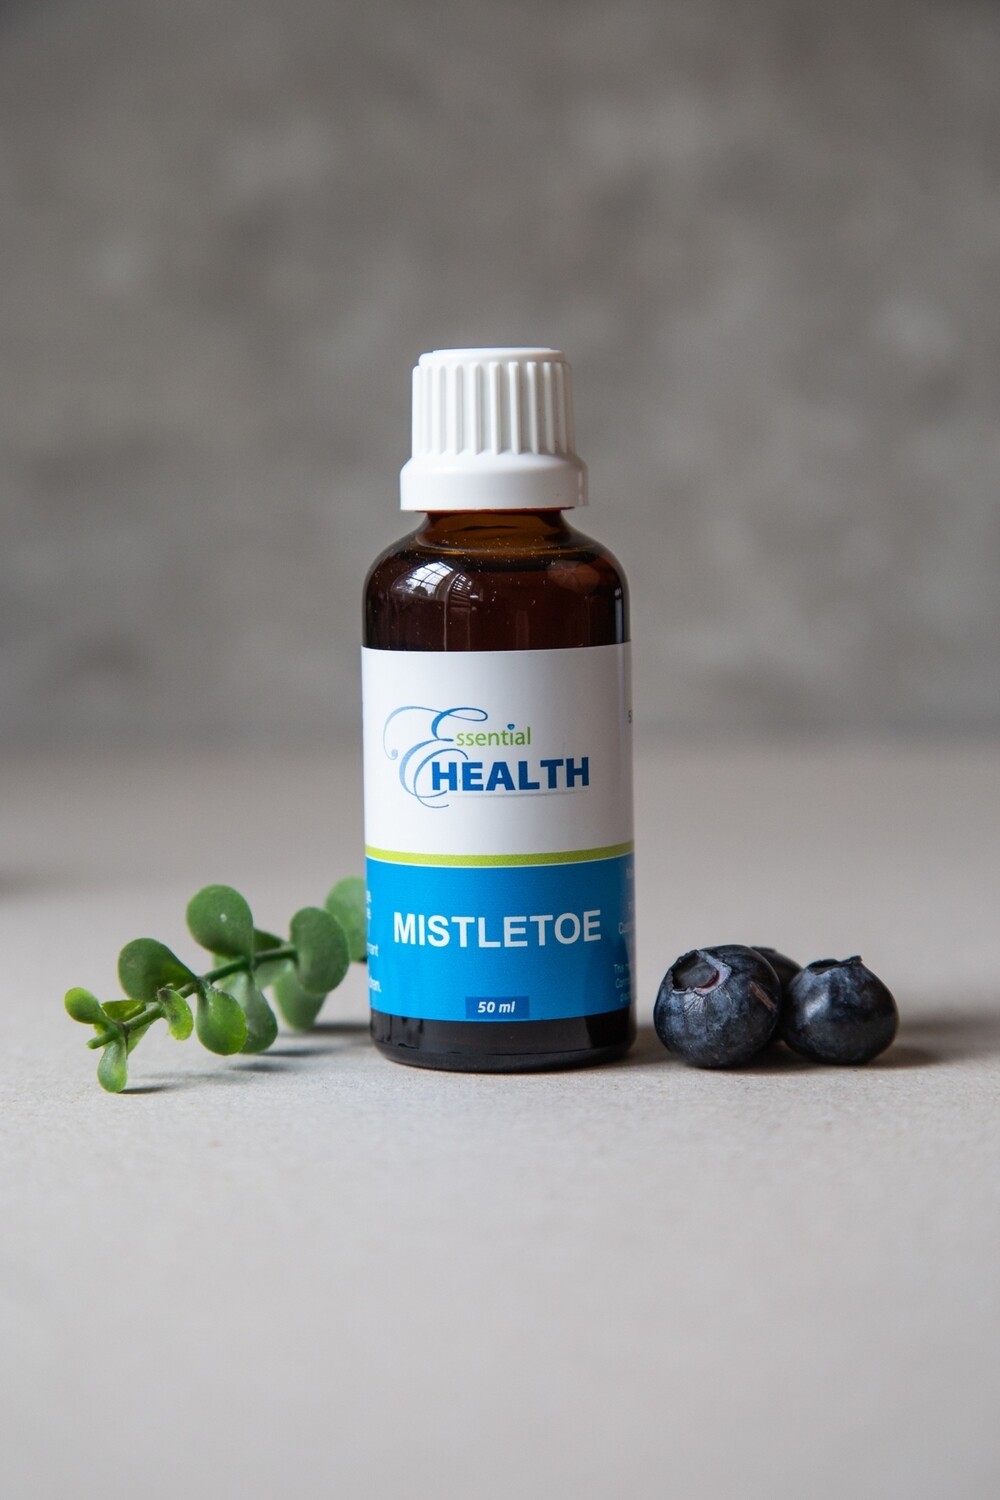 Essential Health Mistletoe 50ml